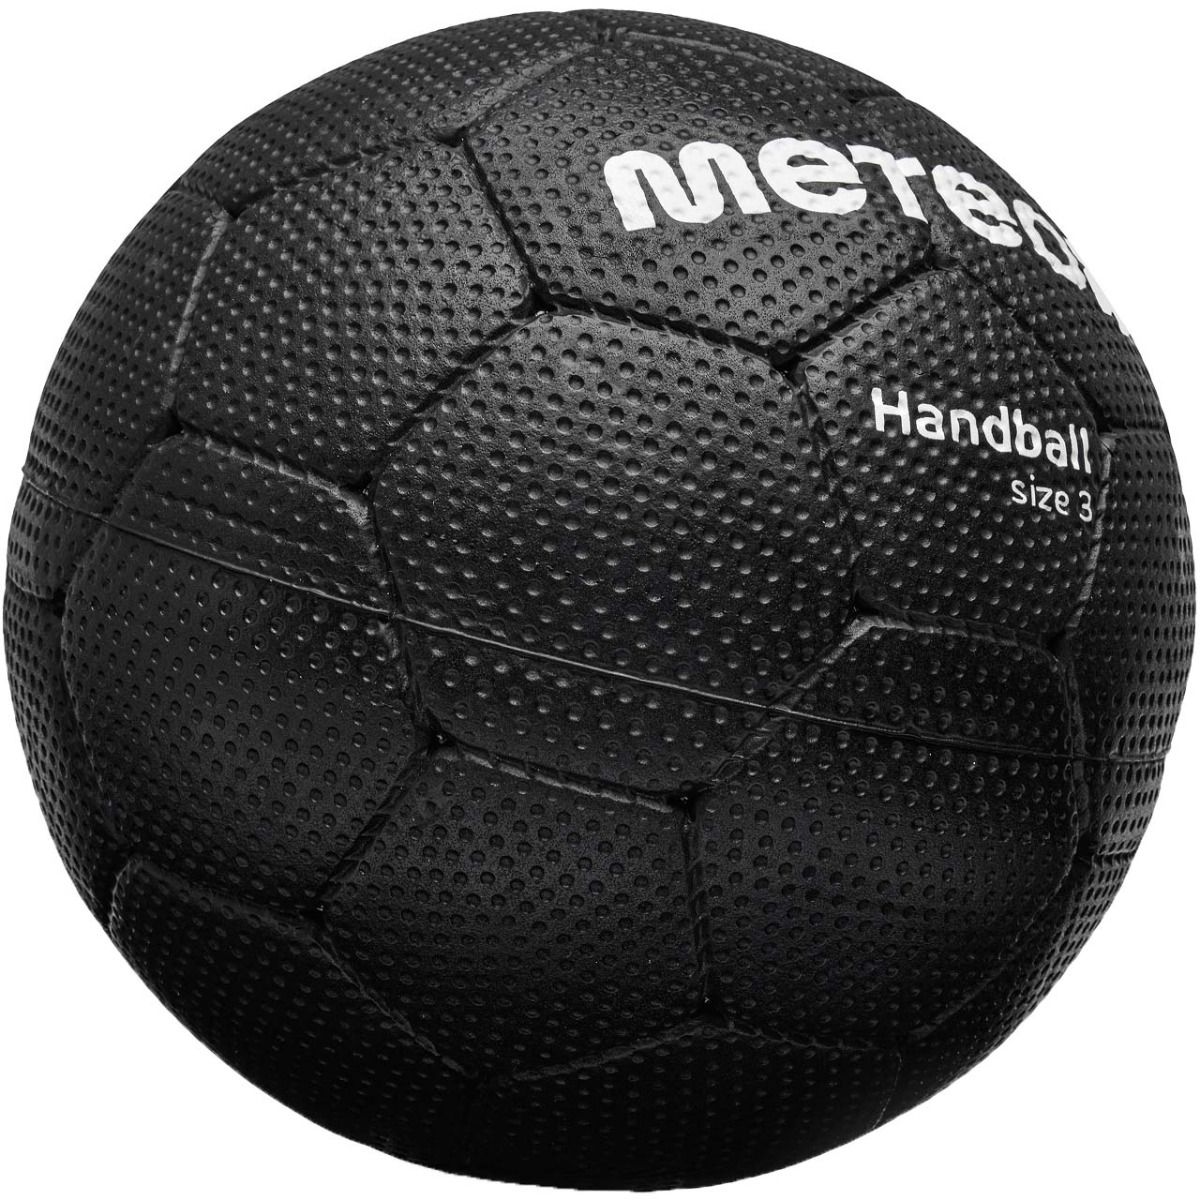 Meteor Herren Handball Magnum 3 16690